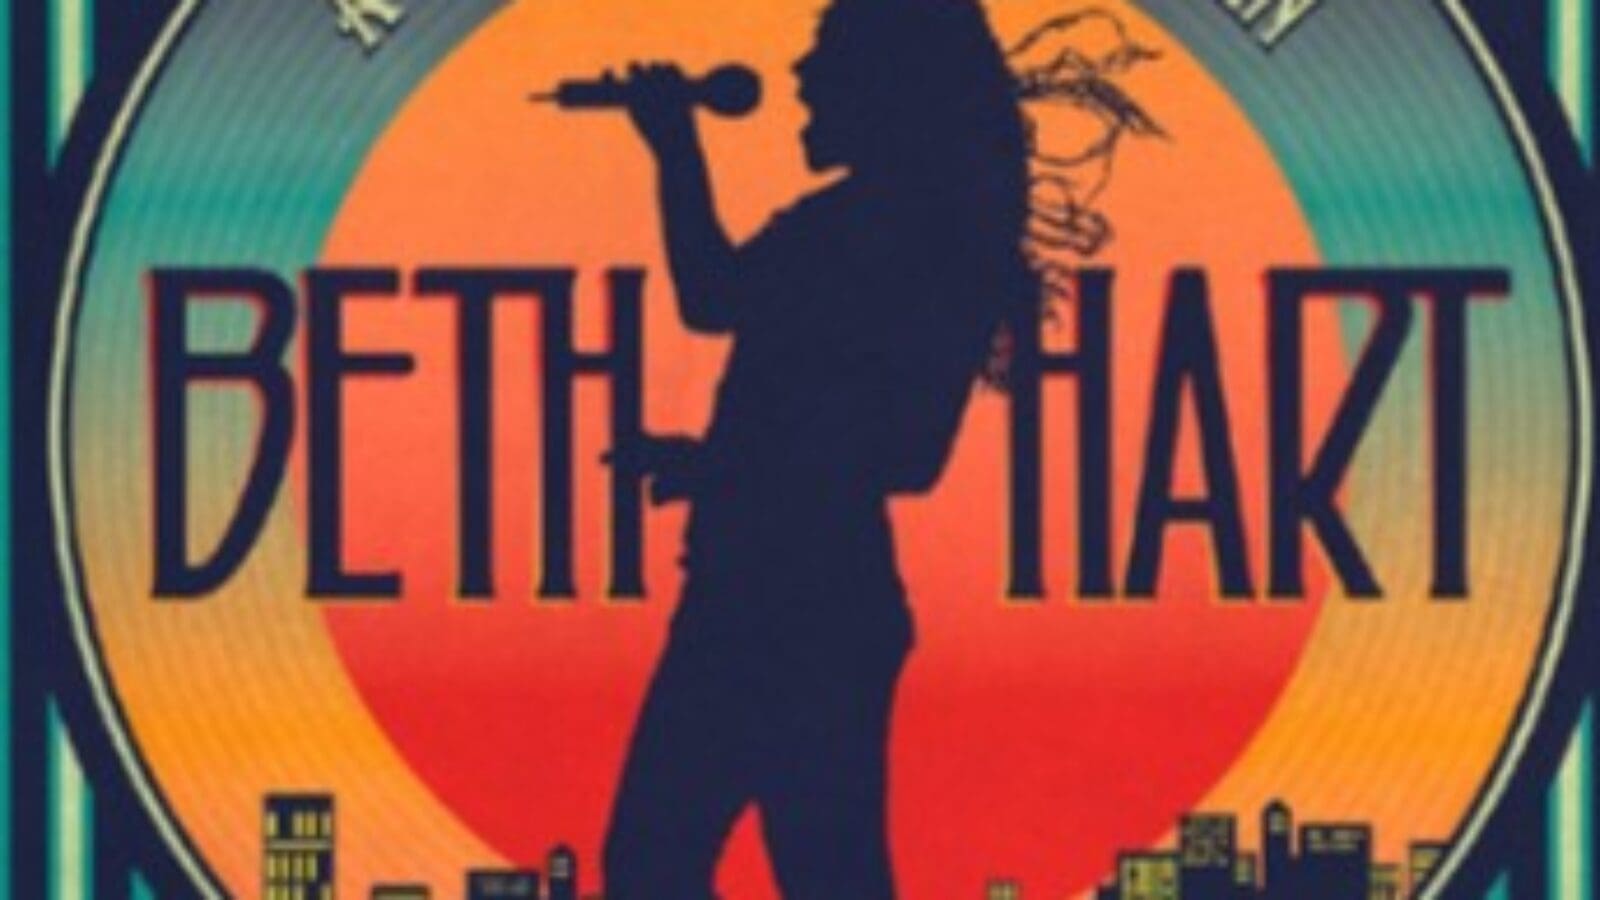 Album des Monats: Beth Hart